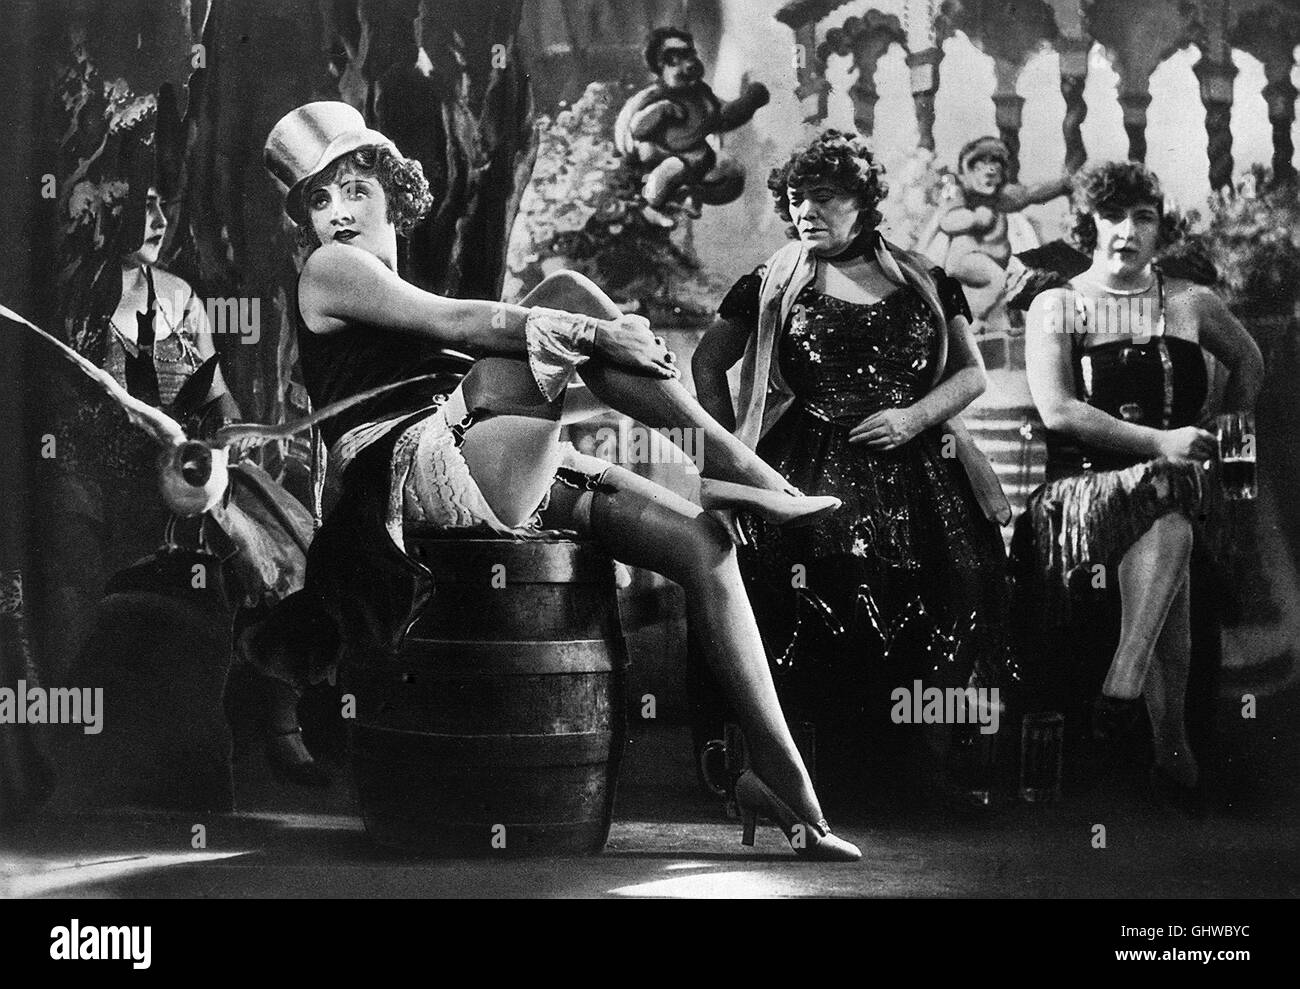 DER BLAUE ENGEL D 1930 - Josef von Sternberg Marlene Dietrich (Lola Lola) u. Rosa Valetti (Guste) Regie: Josef von Sternberg Stock Photo